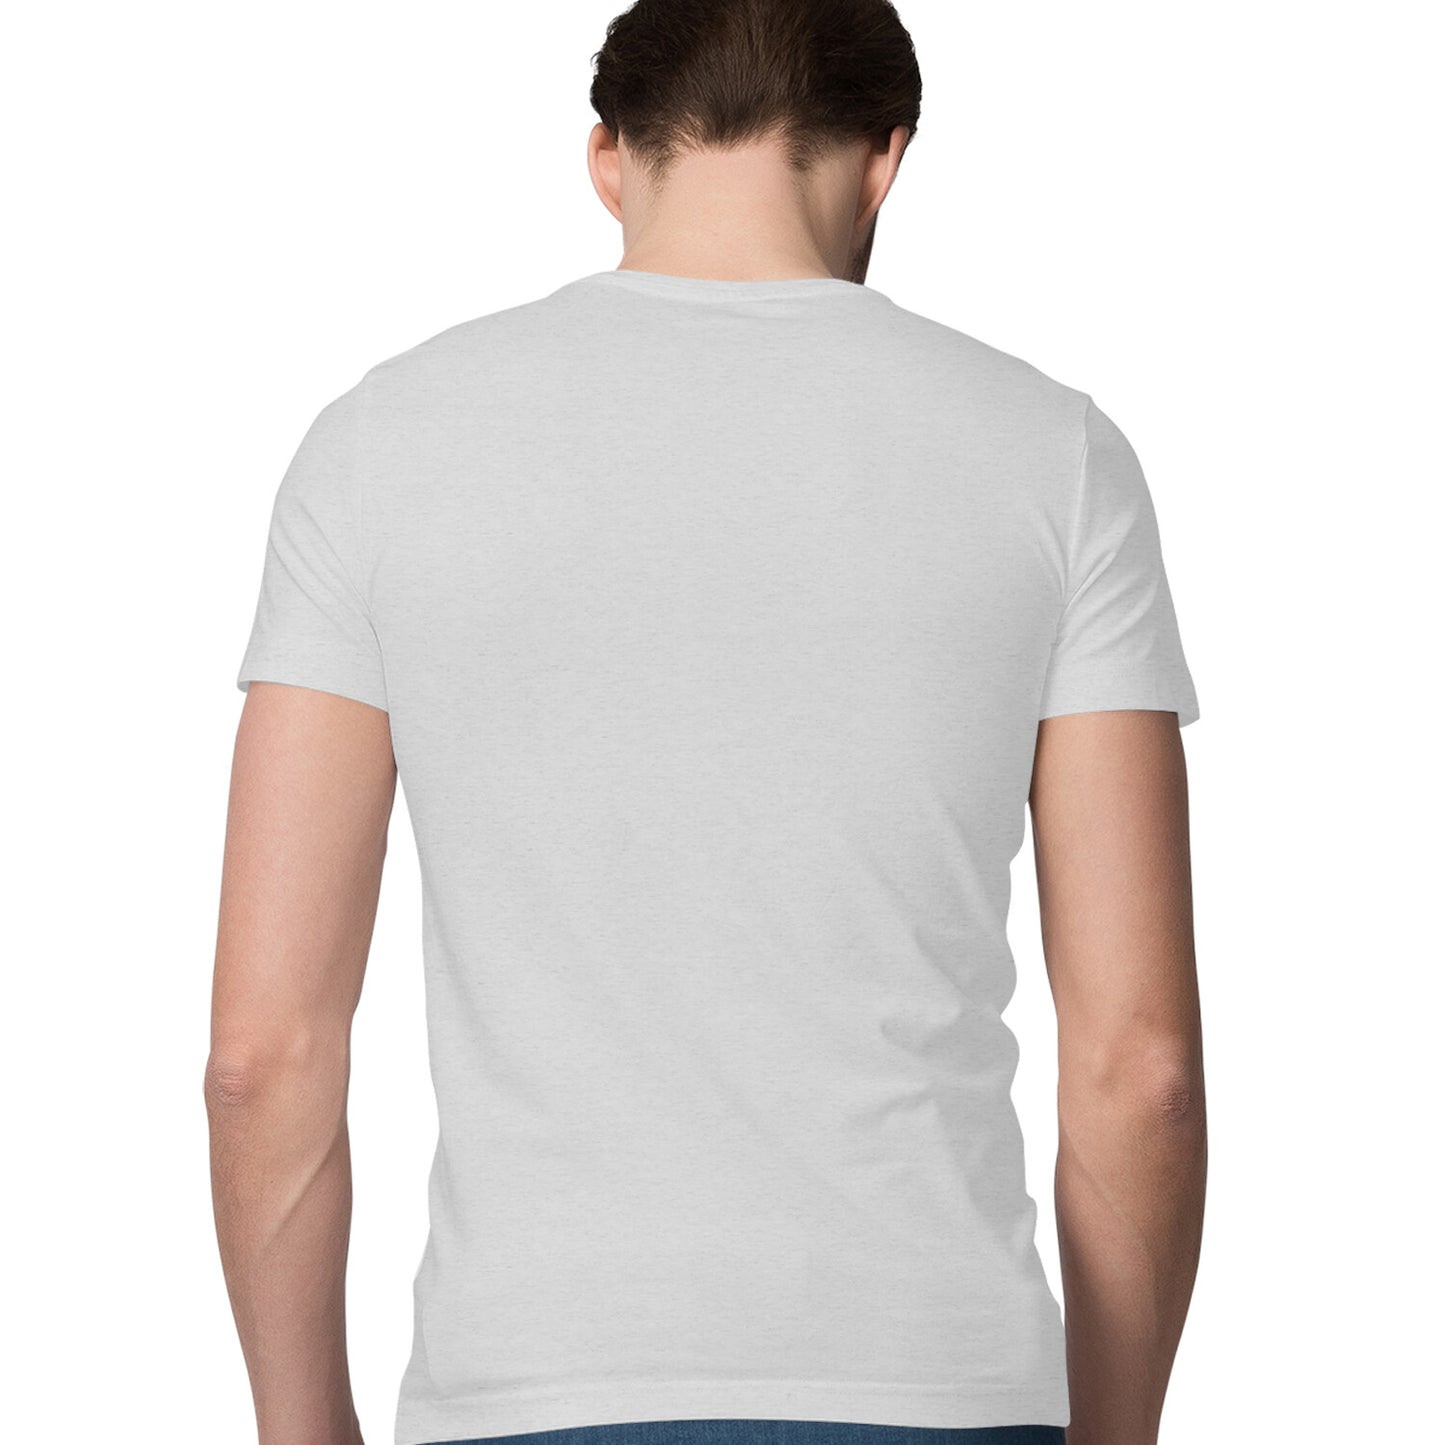 Men's Happy Valentines Day - Half Sleeve Round Neck T-Shirt